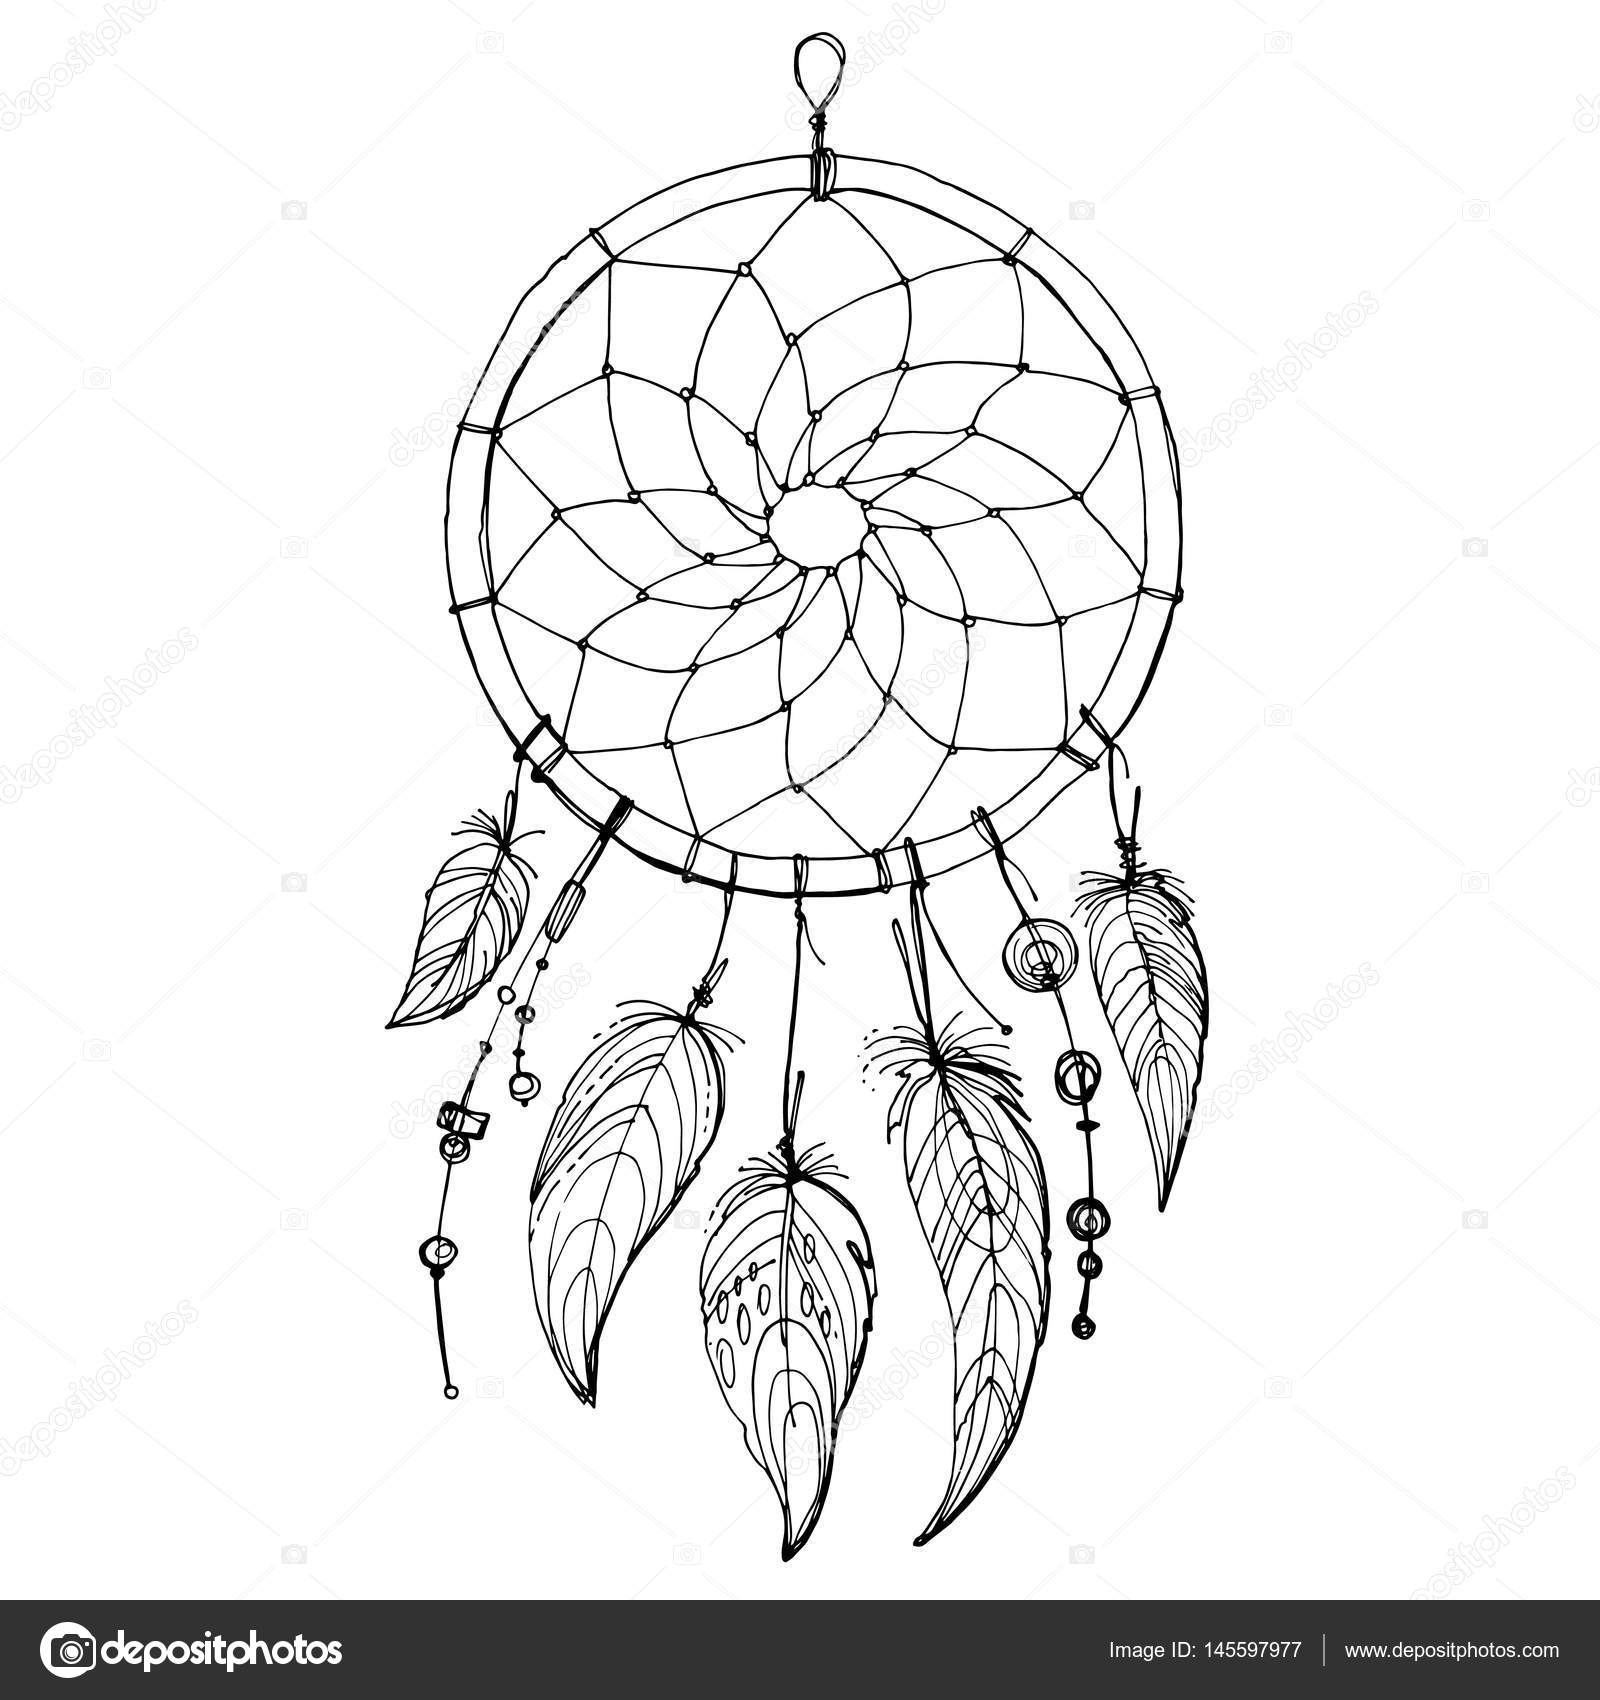 Atrapasueños - Dreamcatcher blanco indio boho con plumas mediano -  Valentina Del Sur